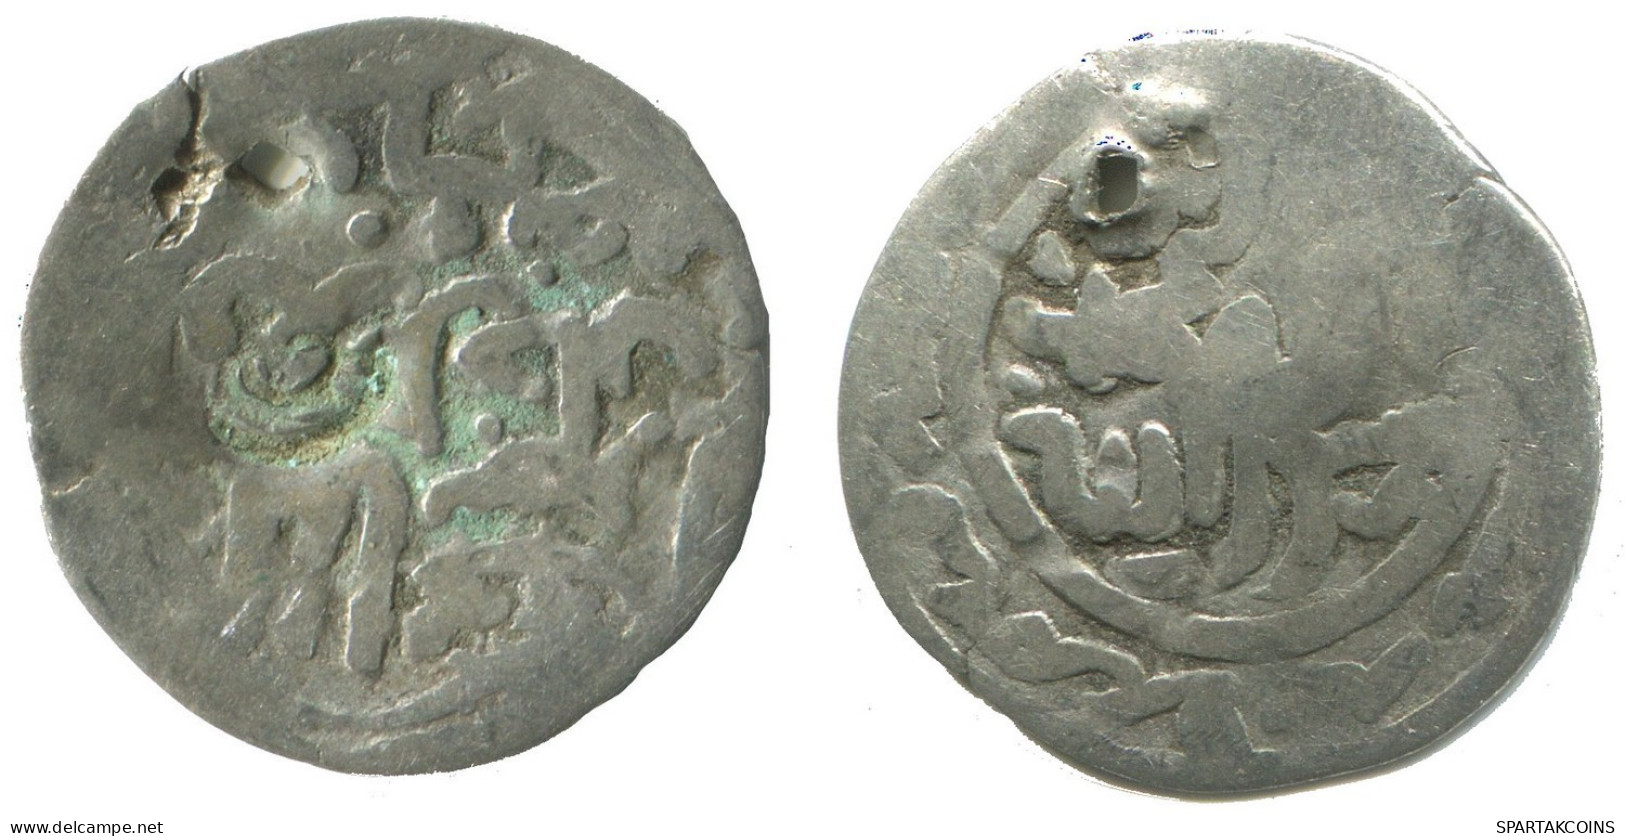 GOLDEN HORDE Silver Dirham Medieval Islamic Coin 1.1g/18mm #NNN1986.8.D.A - Islamische Münzen